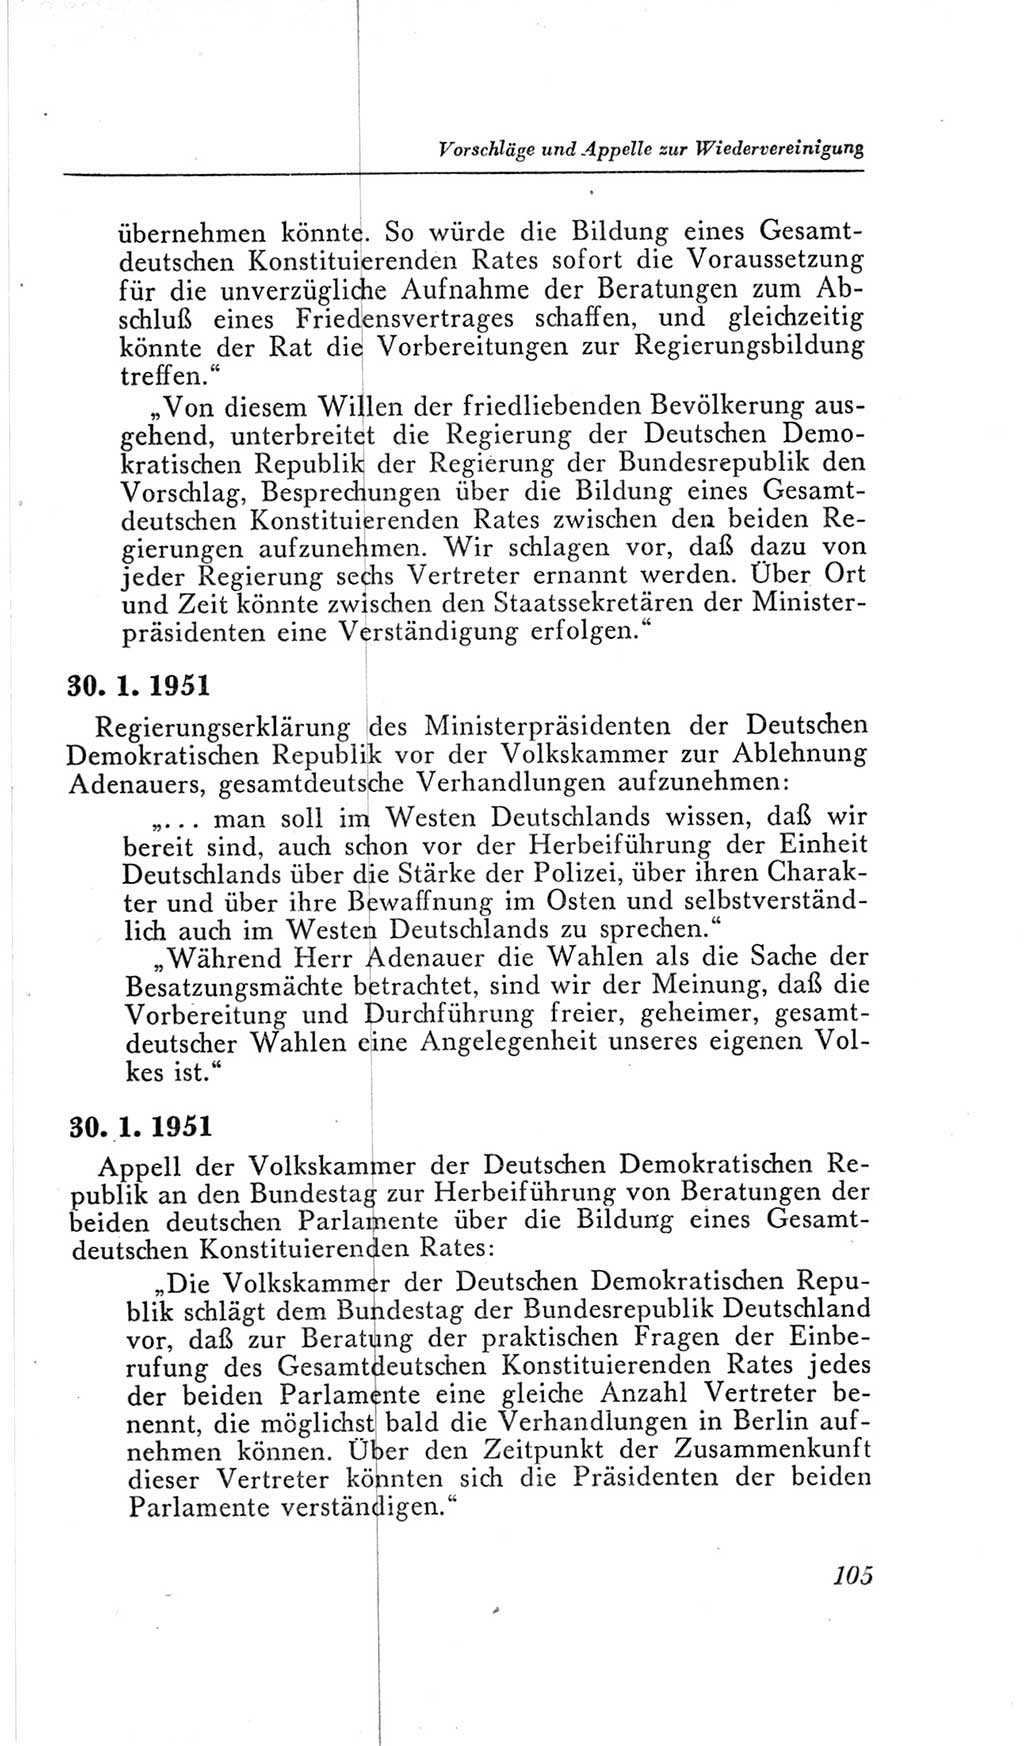 Handbuch der Volkskammer (VK) der Deutschen Demokratischen Republik (DDR), 2. Wahlperiode 1954-1958, Seite 105 (Hdb. VK. DDR, 2. WP. 1954-1958, S. 105)